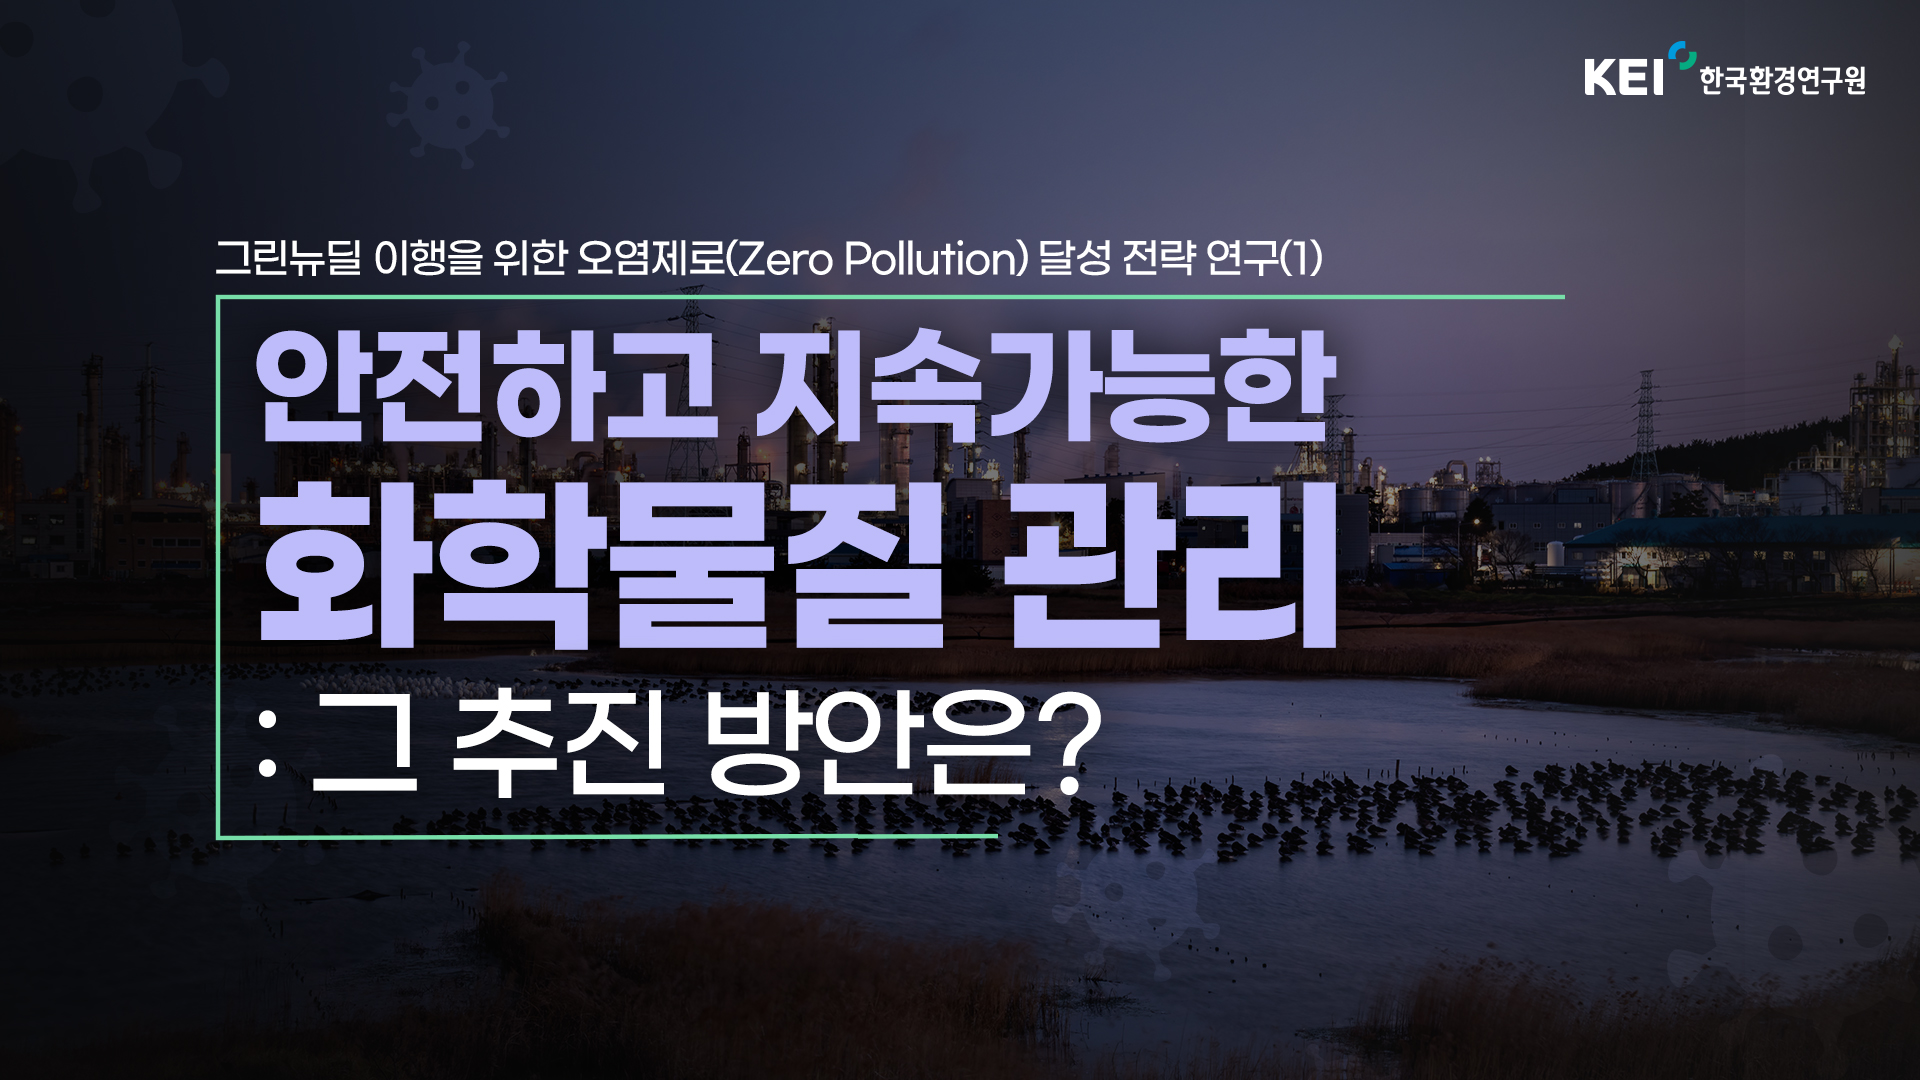 그린뉴딜 이행을 위한 오염제로(Zero Pollution) 달성 전략 연구(1)